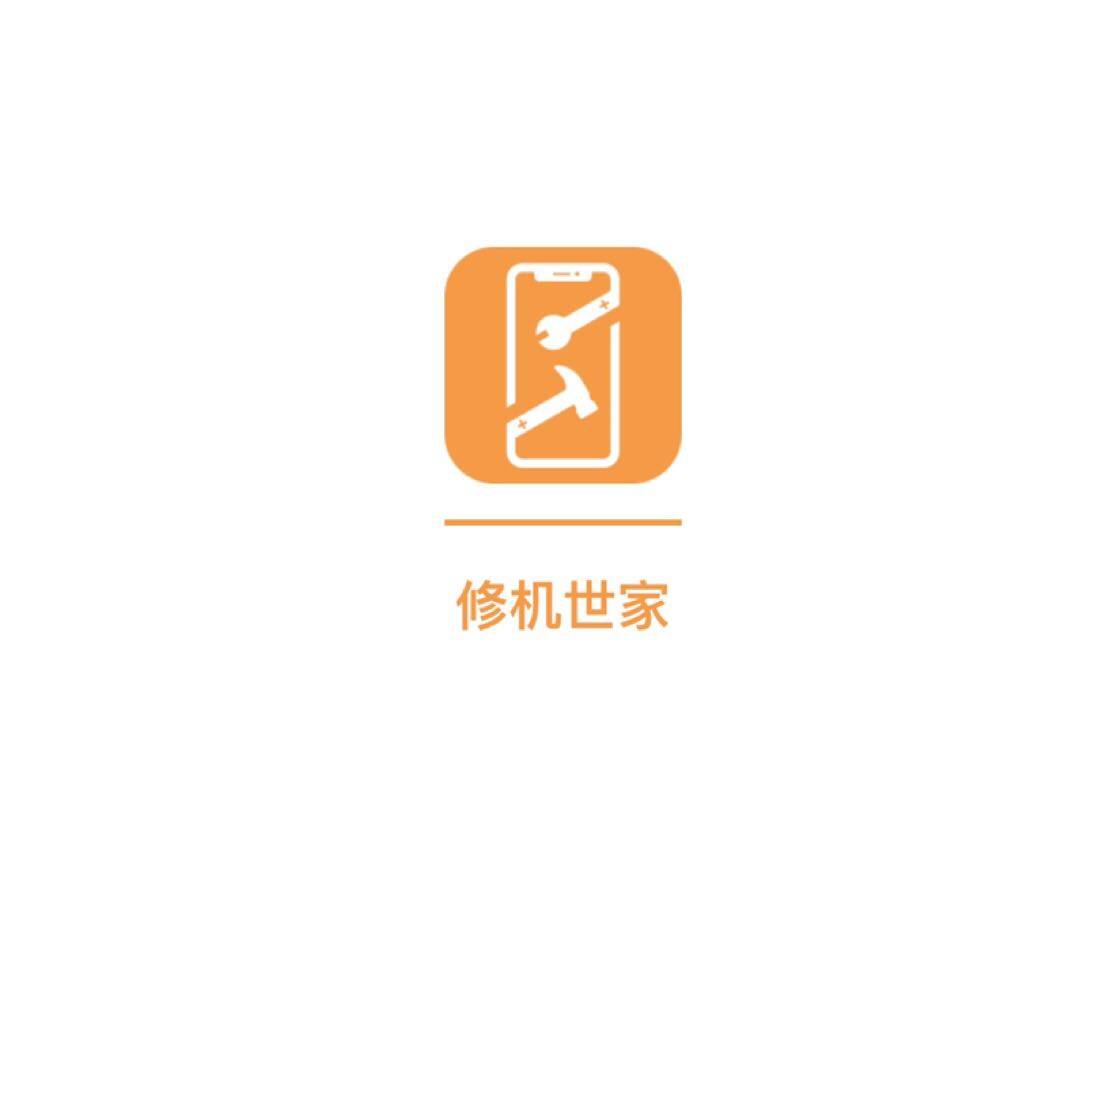 深圳市修机世家电子商务有限公司logo